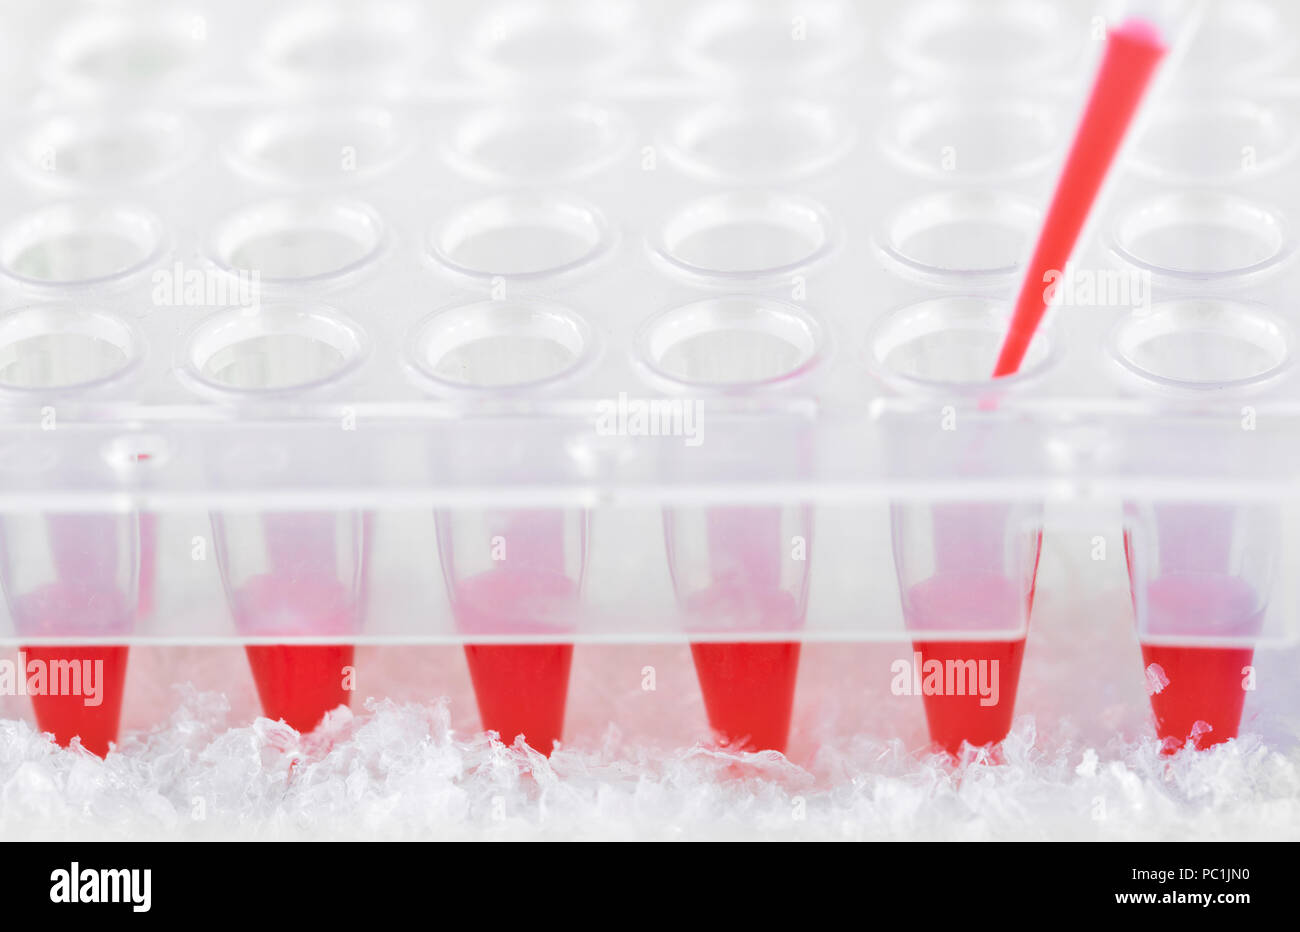 Punta di plastica riempiti in rosso con la miscela di reazione e di plastica monouso pozzetti per amplificare DNA, spazio di testo Foto Stock